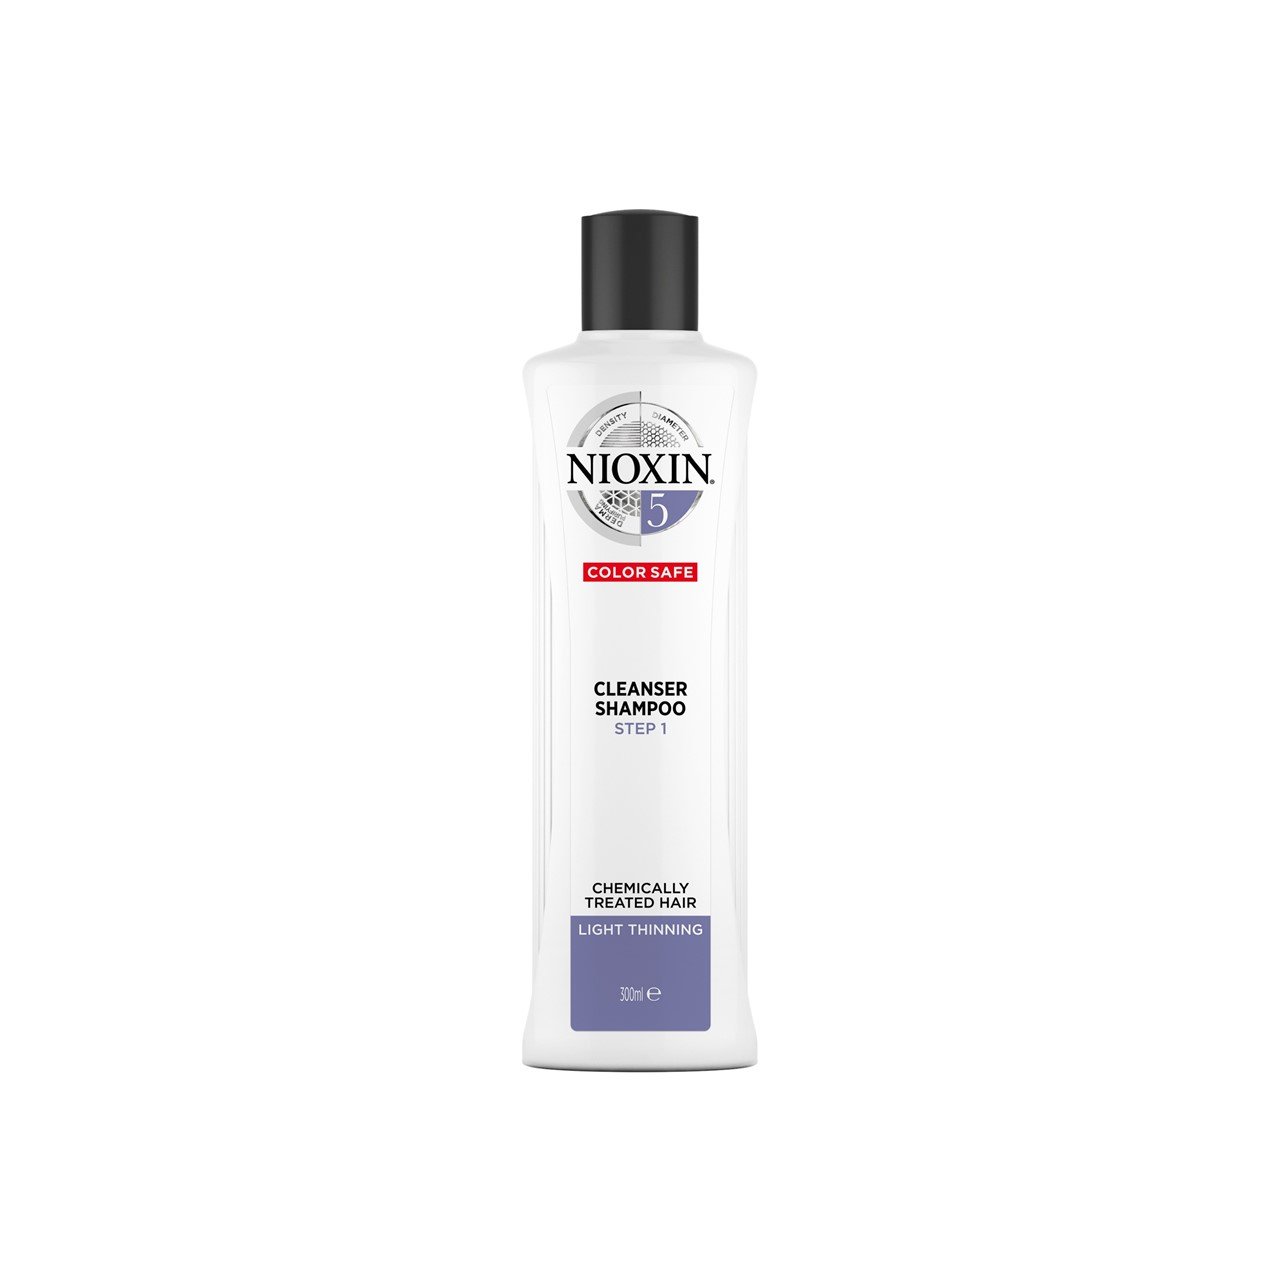 Nioxin System 5 Cleanser Shampoo 300ml (10.14fl oz)